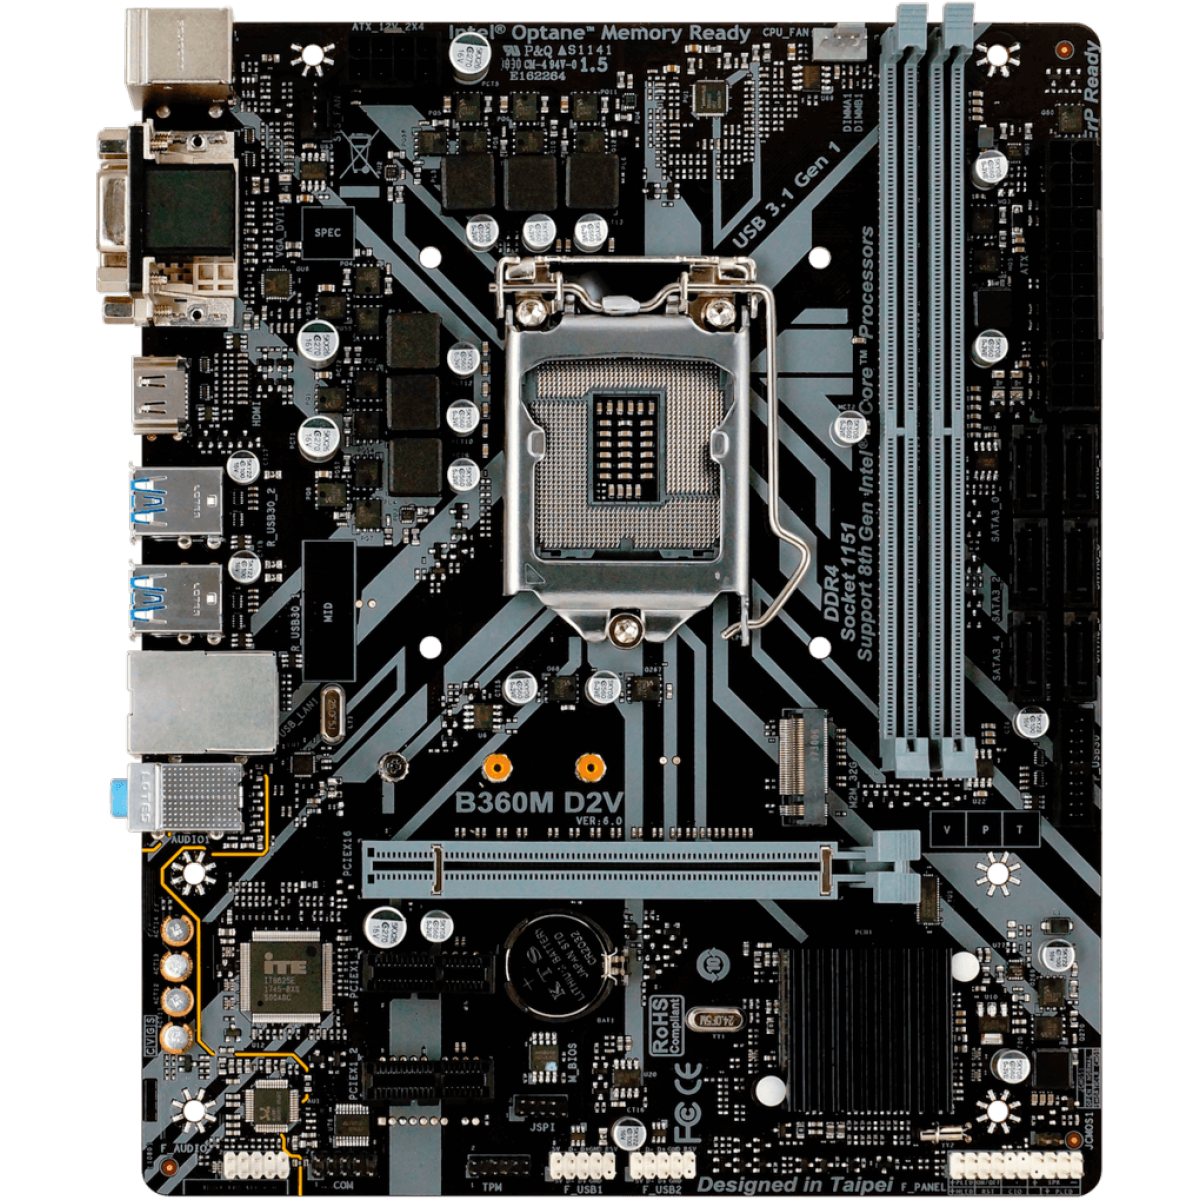 Placa Mãe Biostar B360M D2V, Chipset B360, Intel LGA 1151, mATX, DDR4